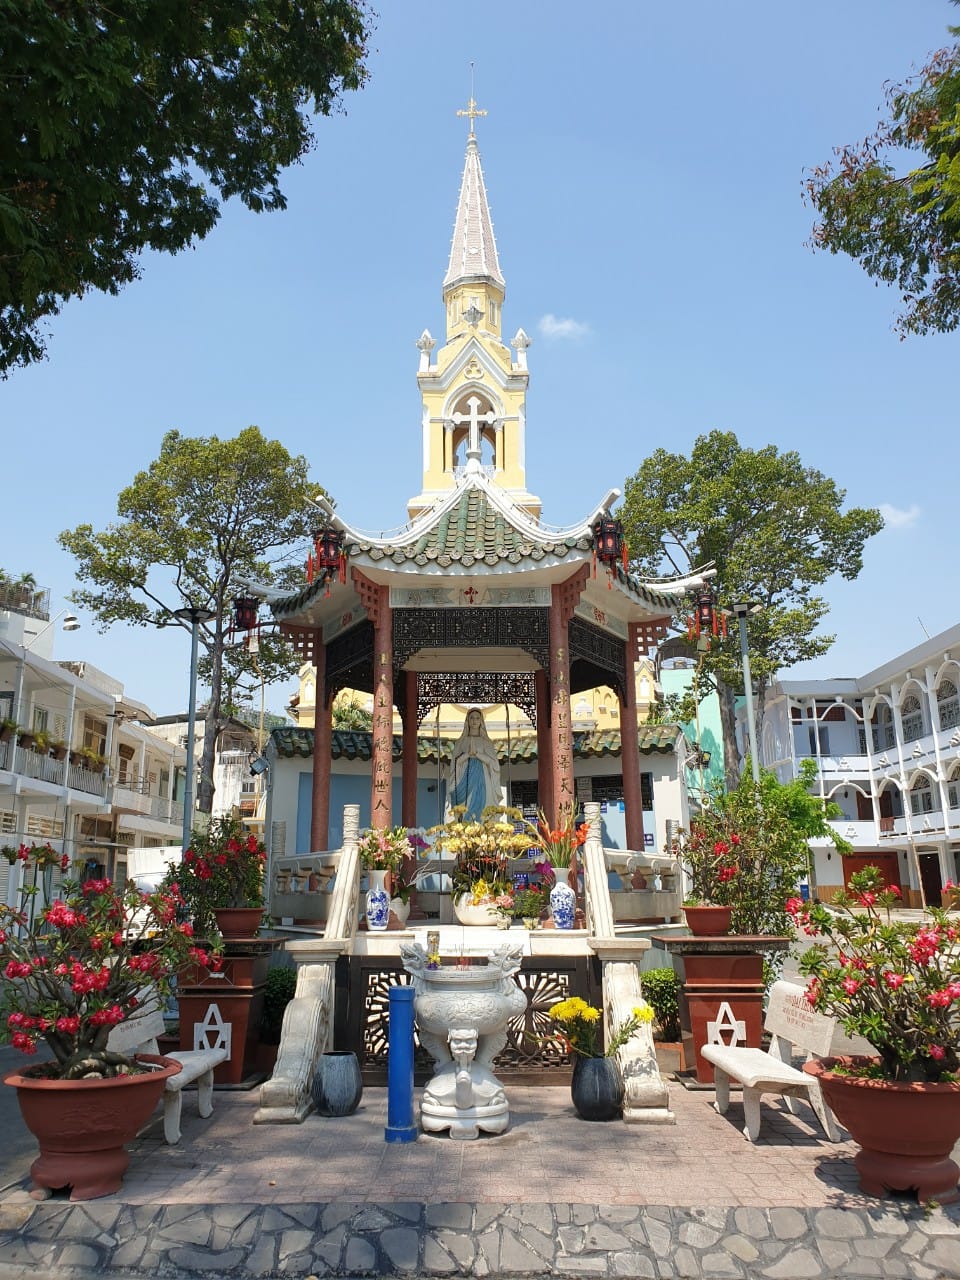 Nhà thờ ở Sài Gòn, nét độc đáo Tây phương trên nền văn hóa Á Đông - 3